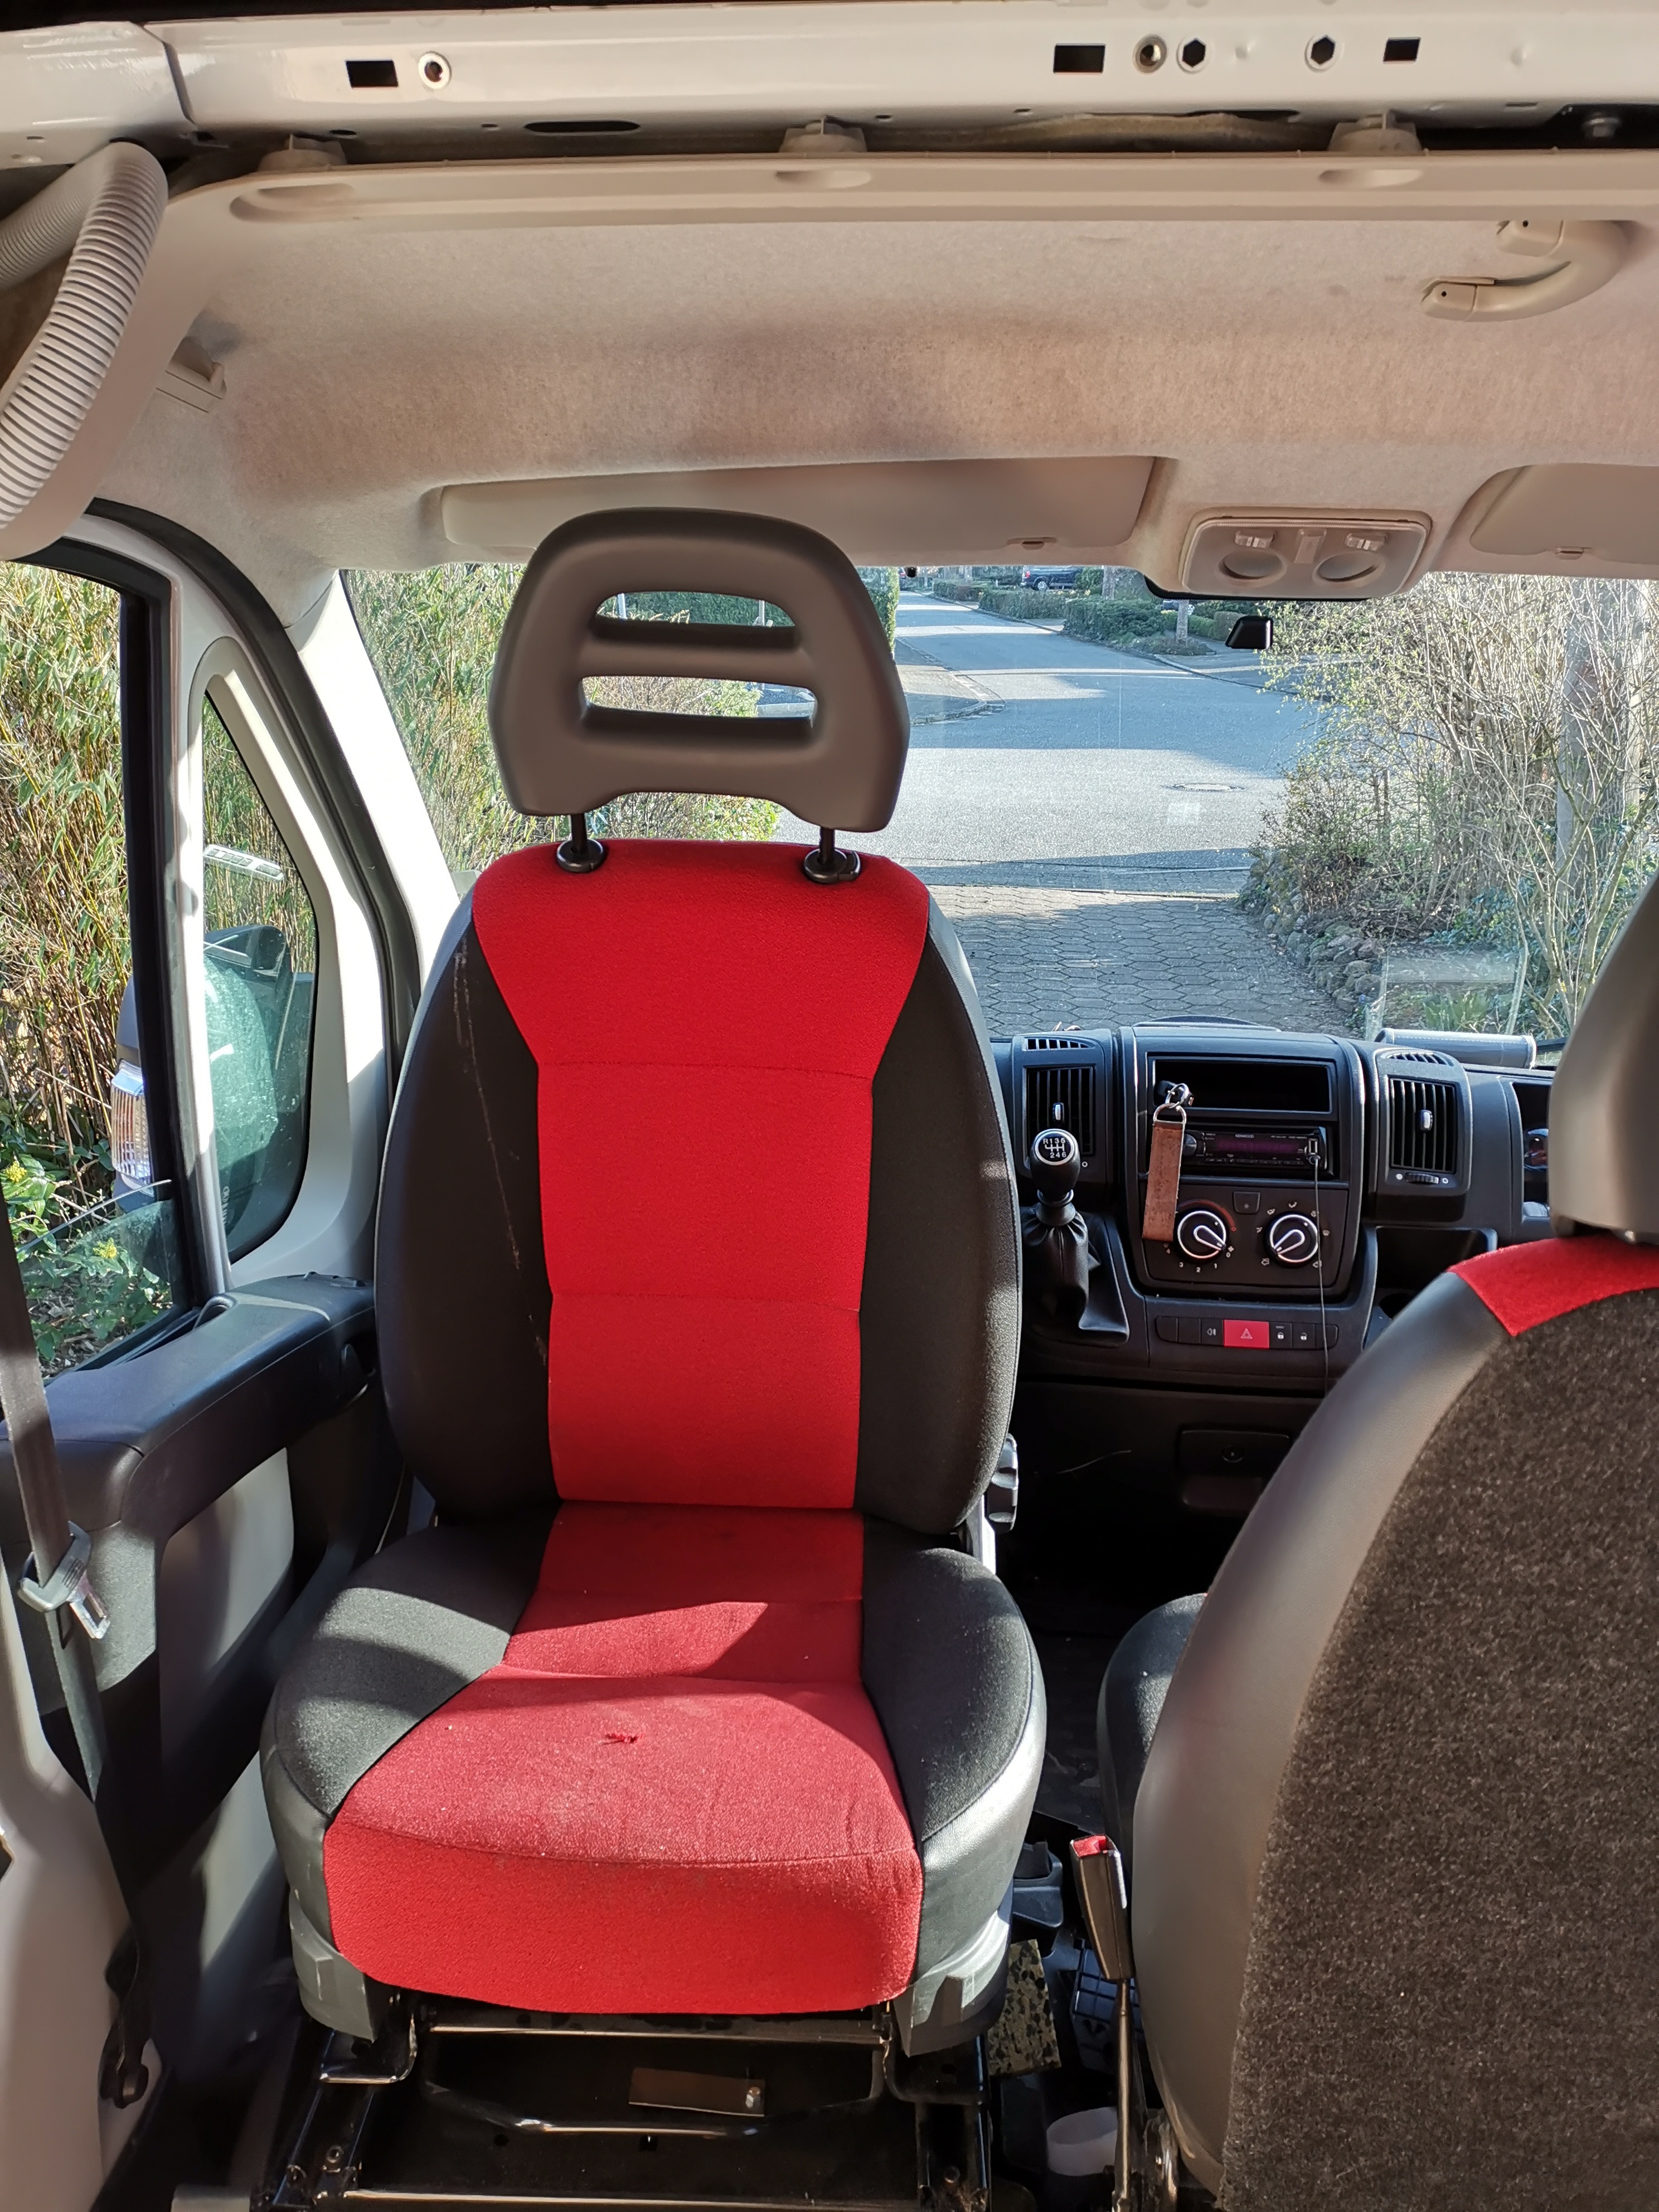 Drehkonsole für Fahrersitz - trotz Beifahrerdoppelsitzbank möglich? (250er)  - Wohnmobilaufbau 